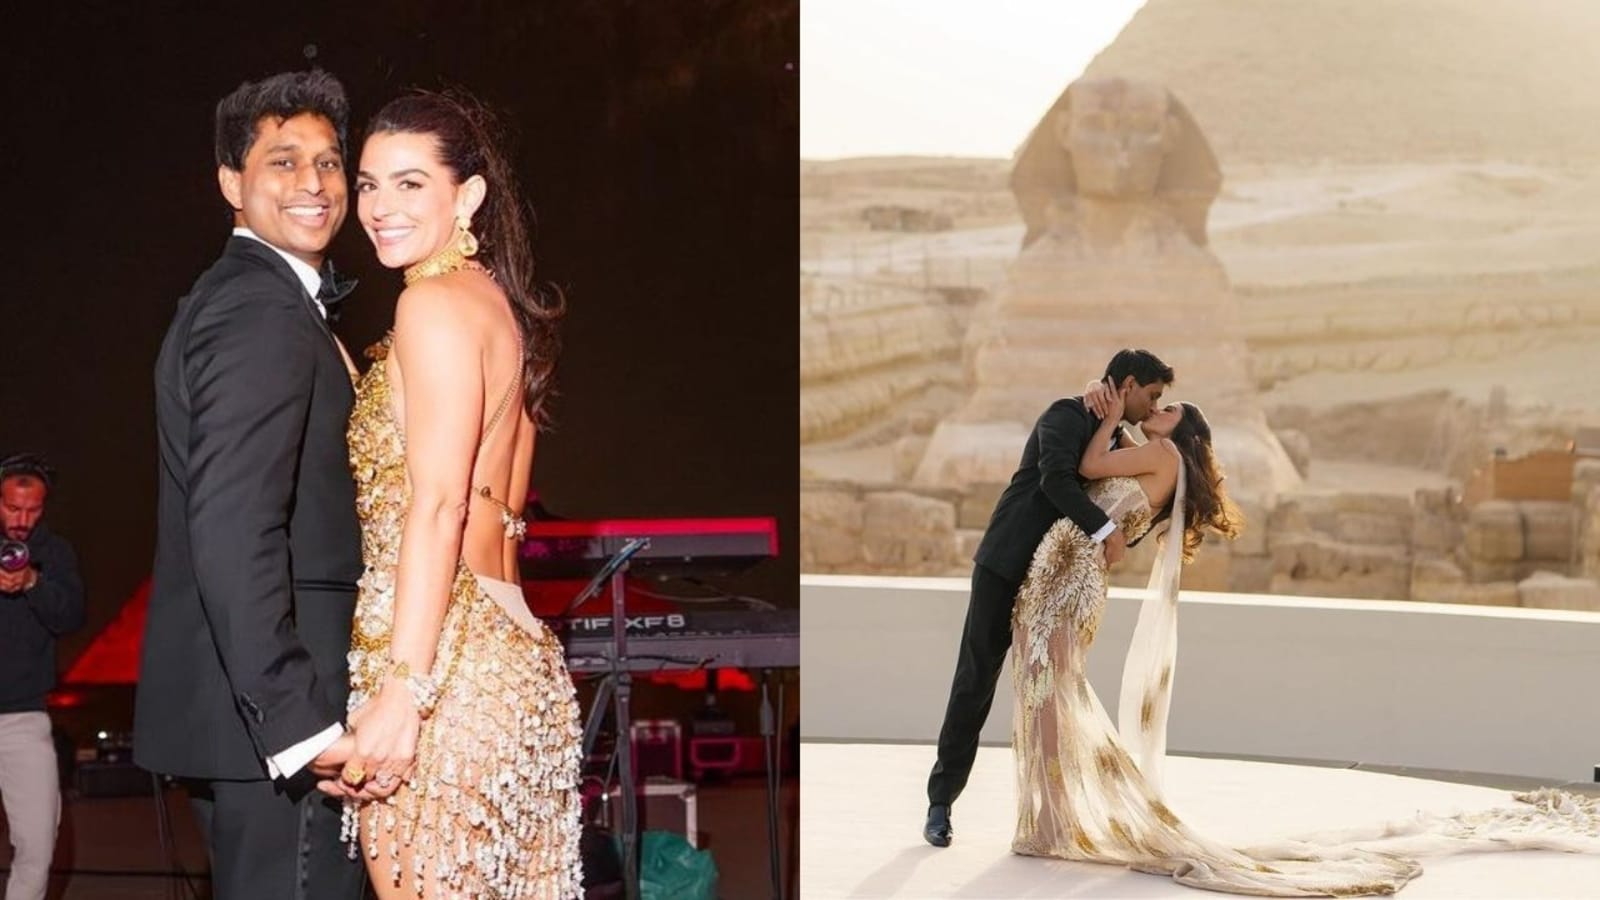 Miliarder technologiczny Ankur Jain poślubia byłą gwiazdę WWE Erikę Hammond w egipskim splendorze: Private Jets, Pyramids..